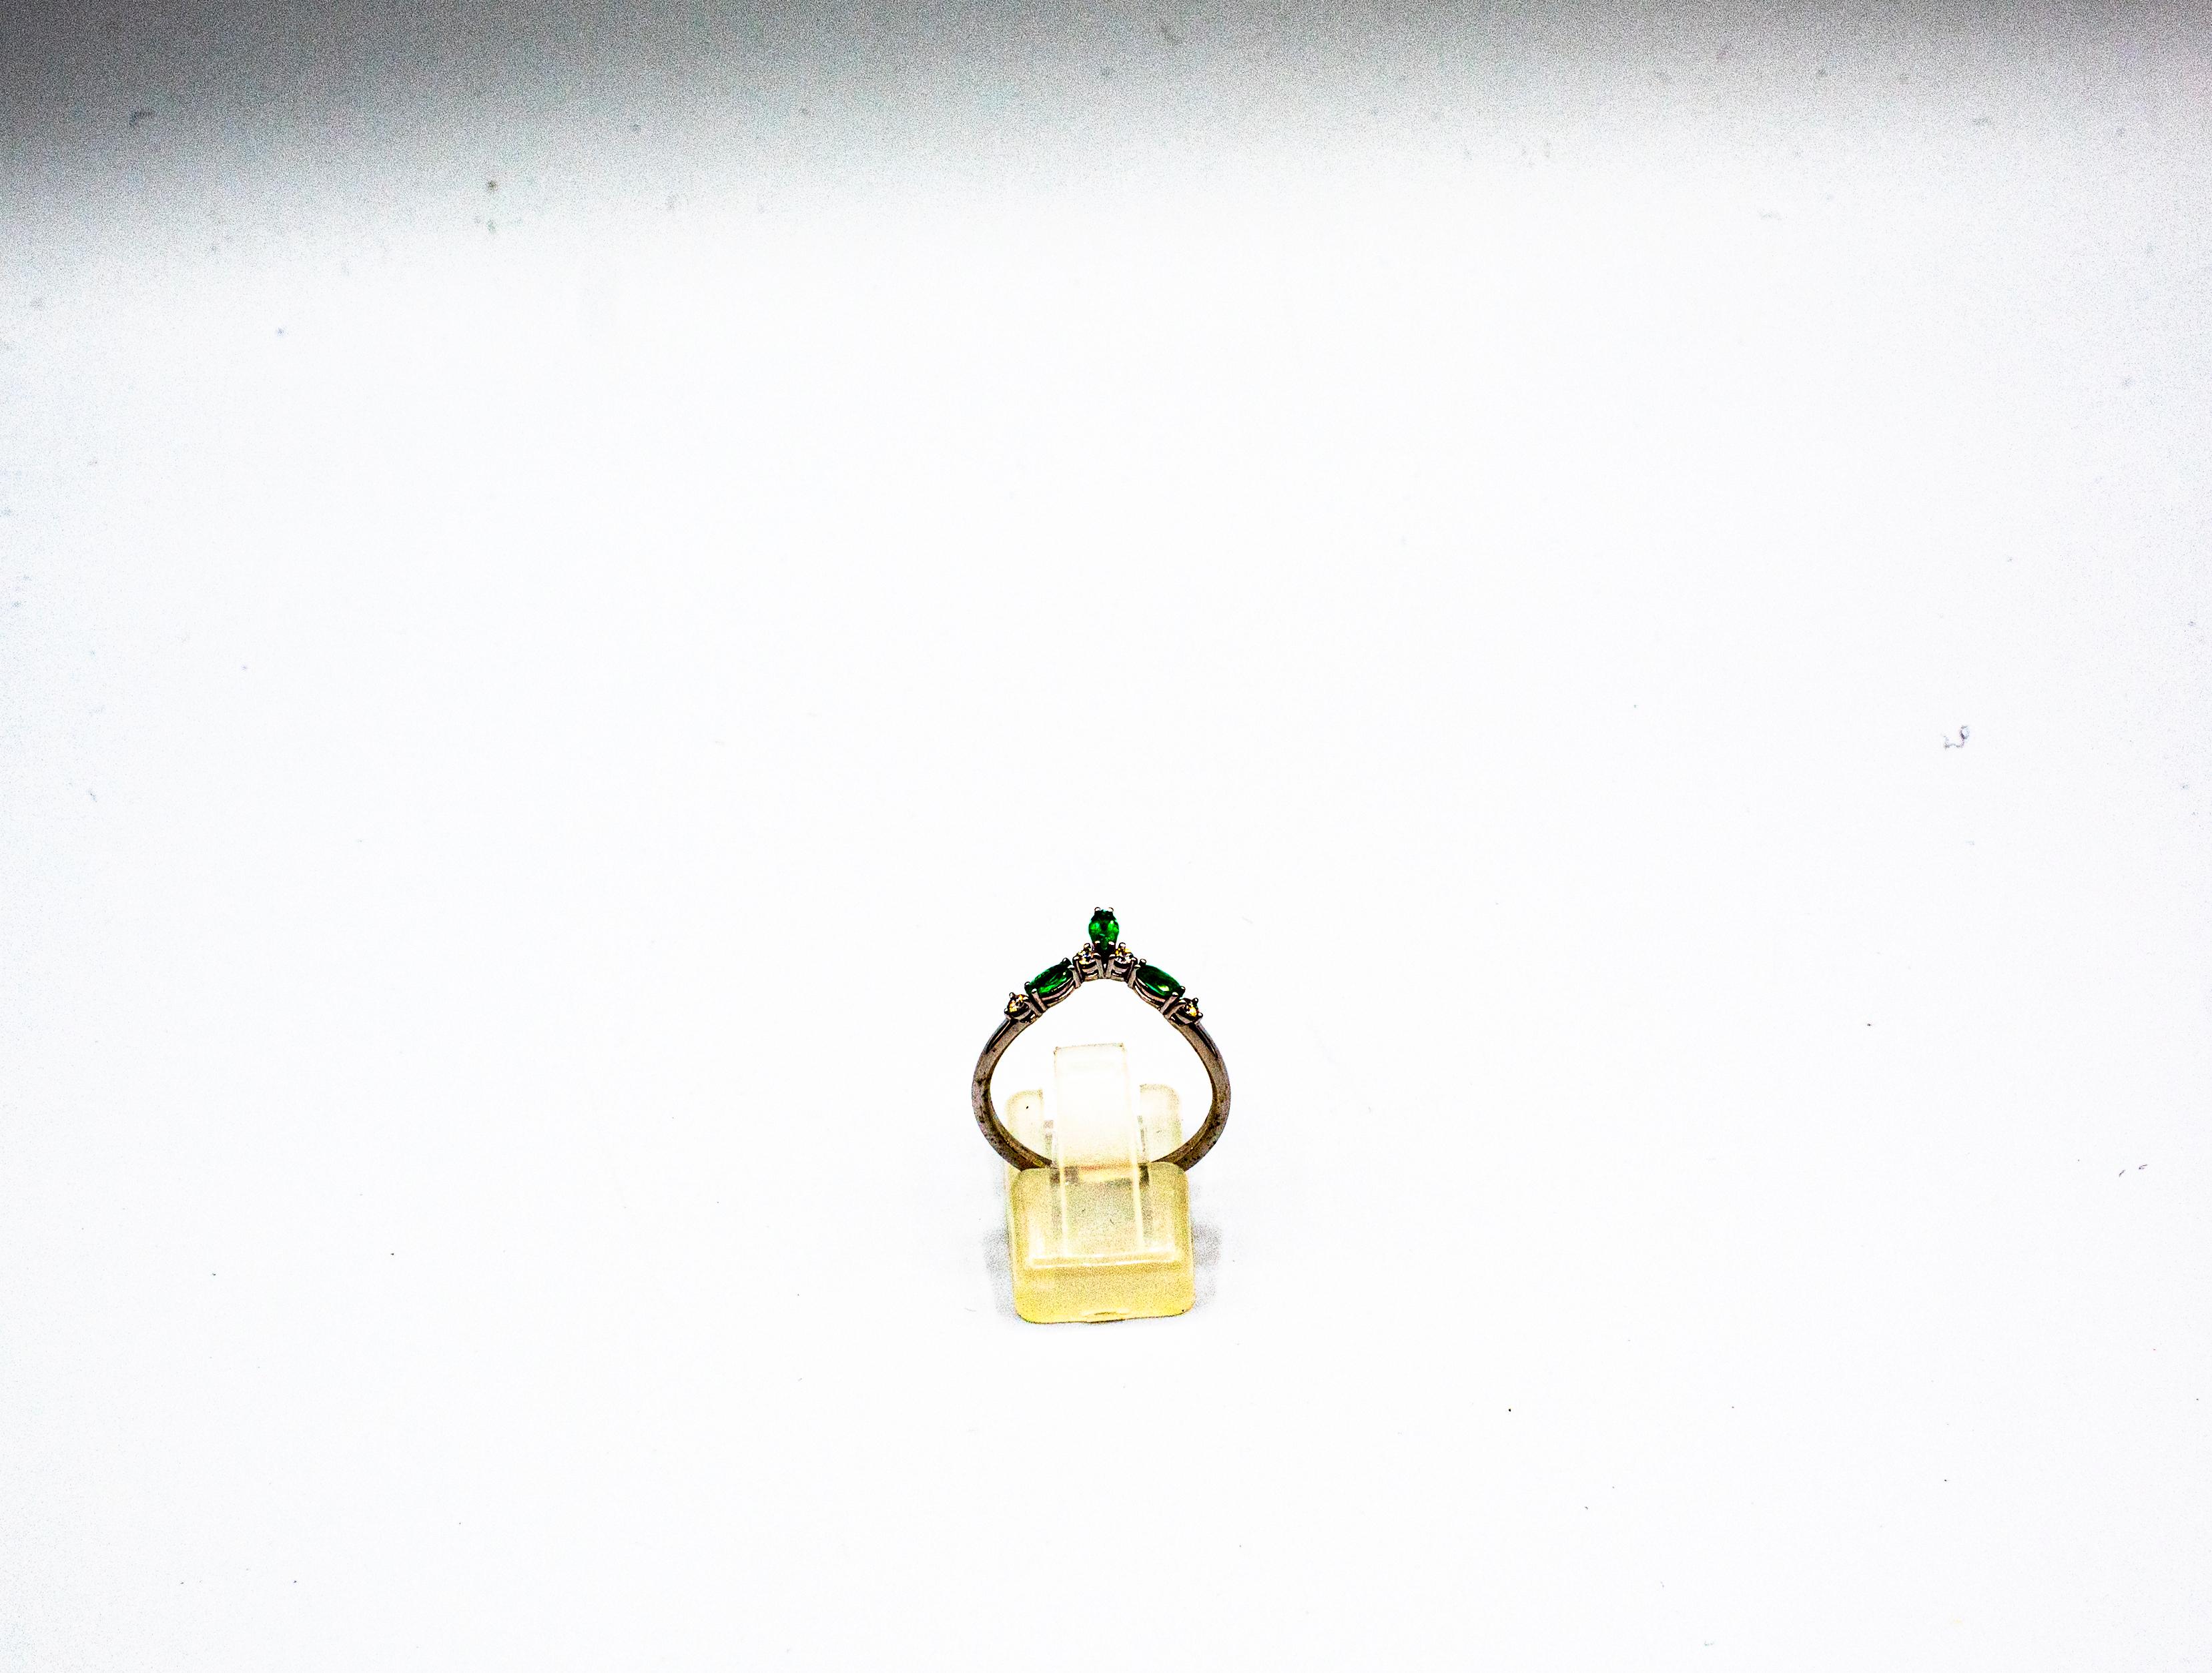 Dieser Ring ist aus 18K Weißgold gefertigt.
Dieser Ring hat 0.10 Karat Diamanten im weißen Brillantschliff.
Dieser Ring hat 0,38 Karat natürlichen Sambia Navette Cut Smaragd.

Dieser Ring ist vom Art Deco inspiriert.

Dieser Ring kann einen größeren